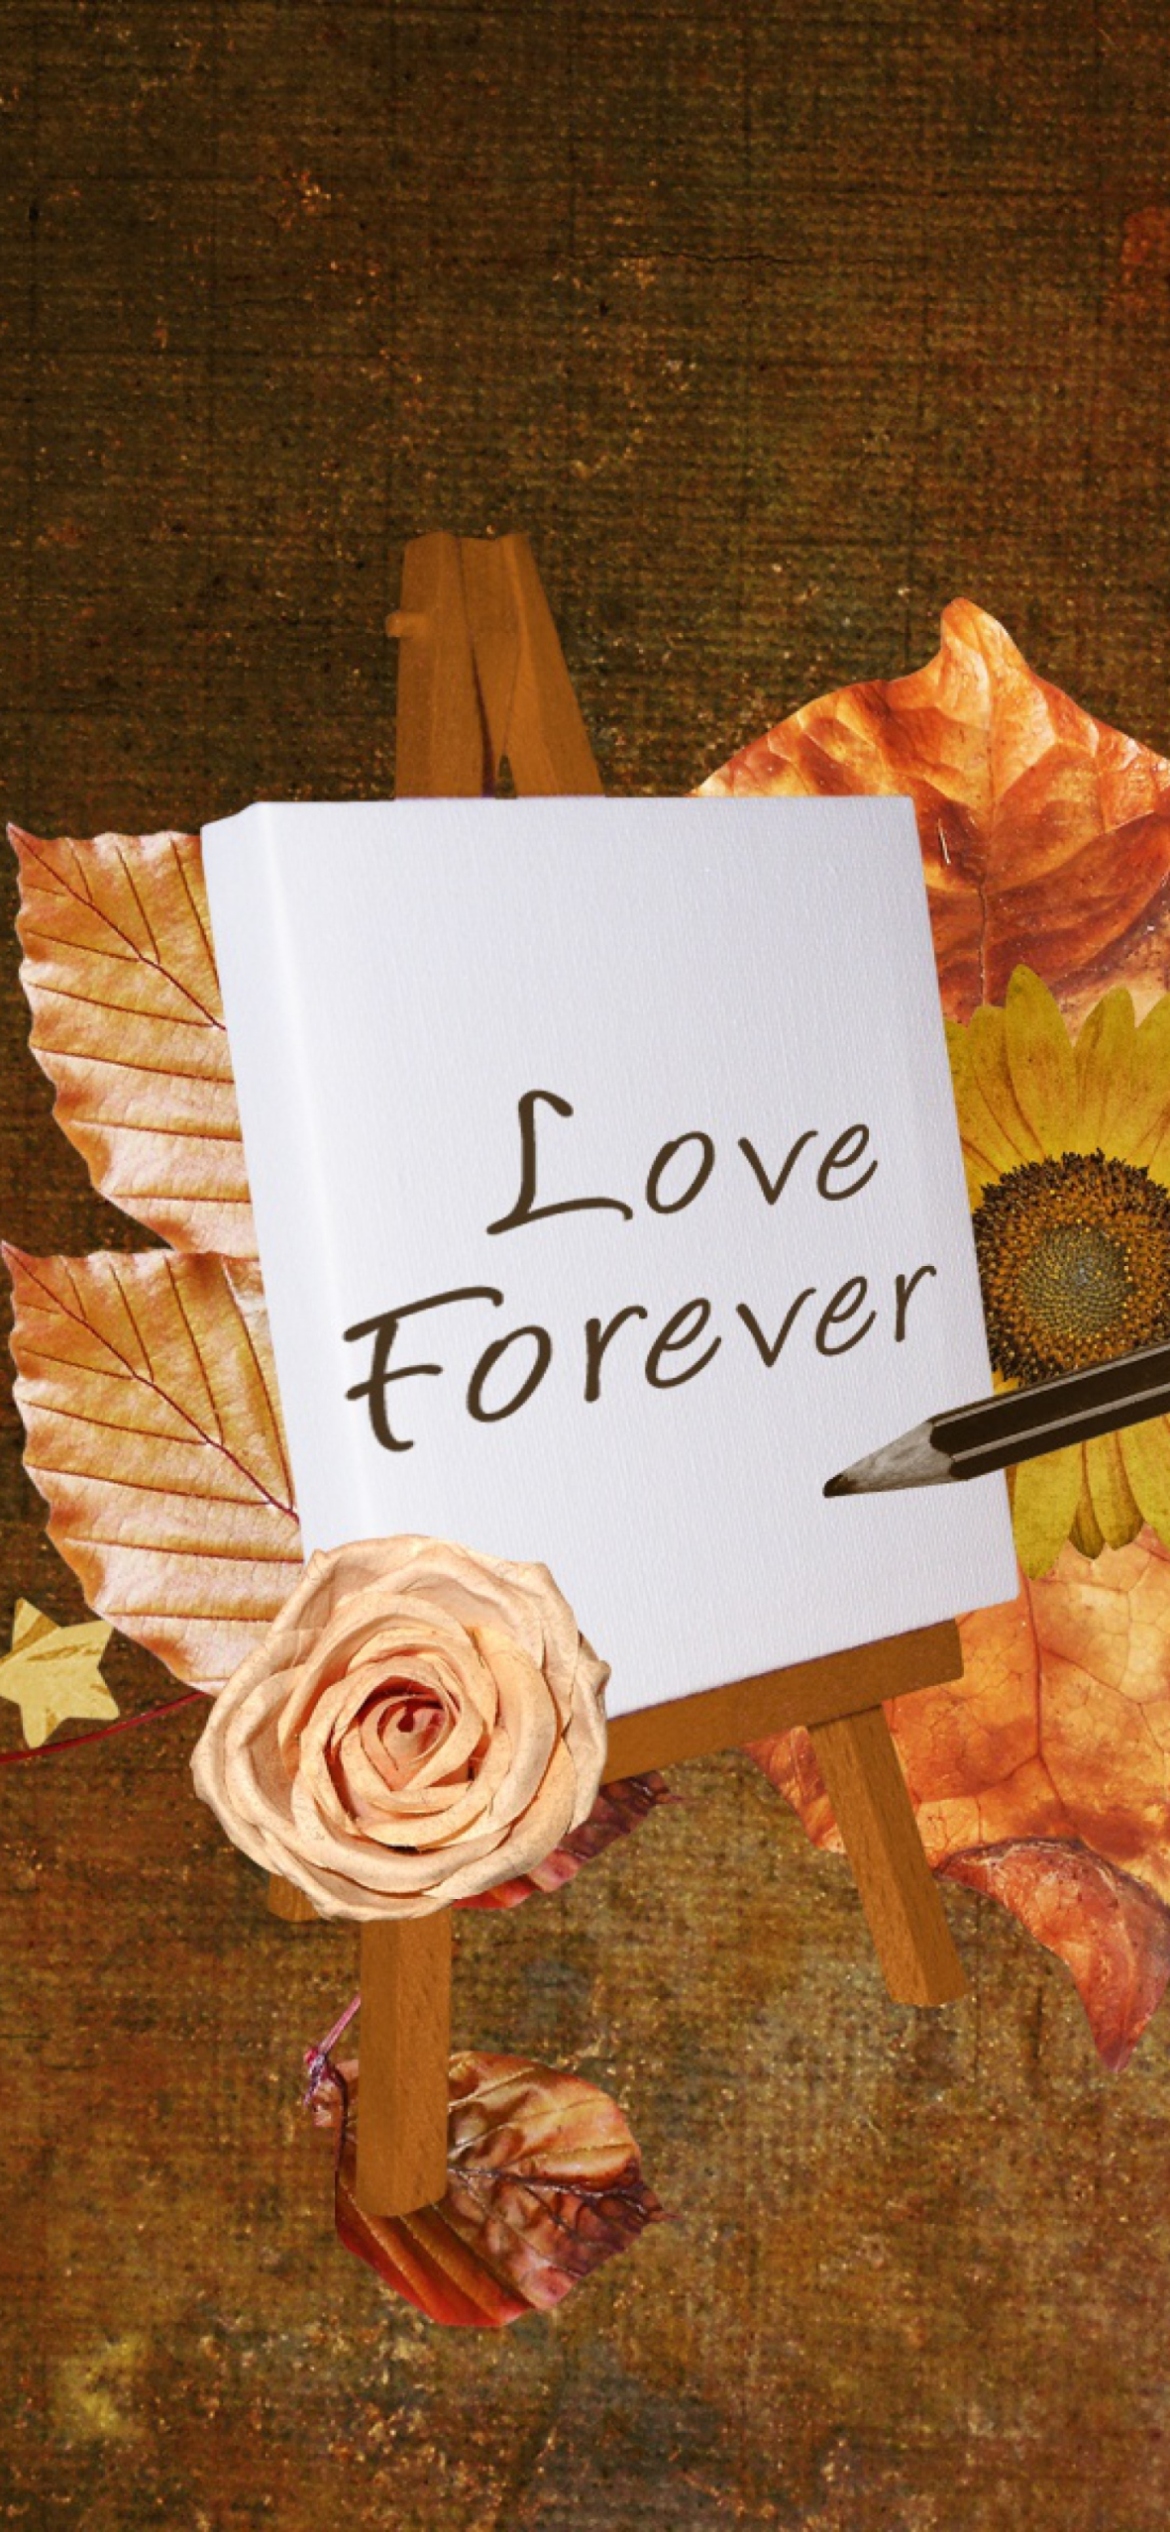 Love Forever wallpaper 1170x2532